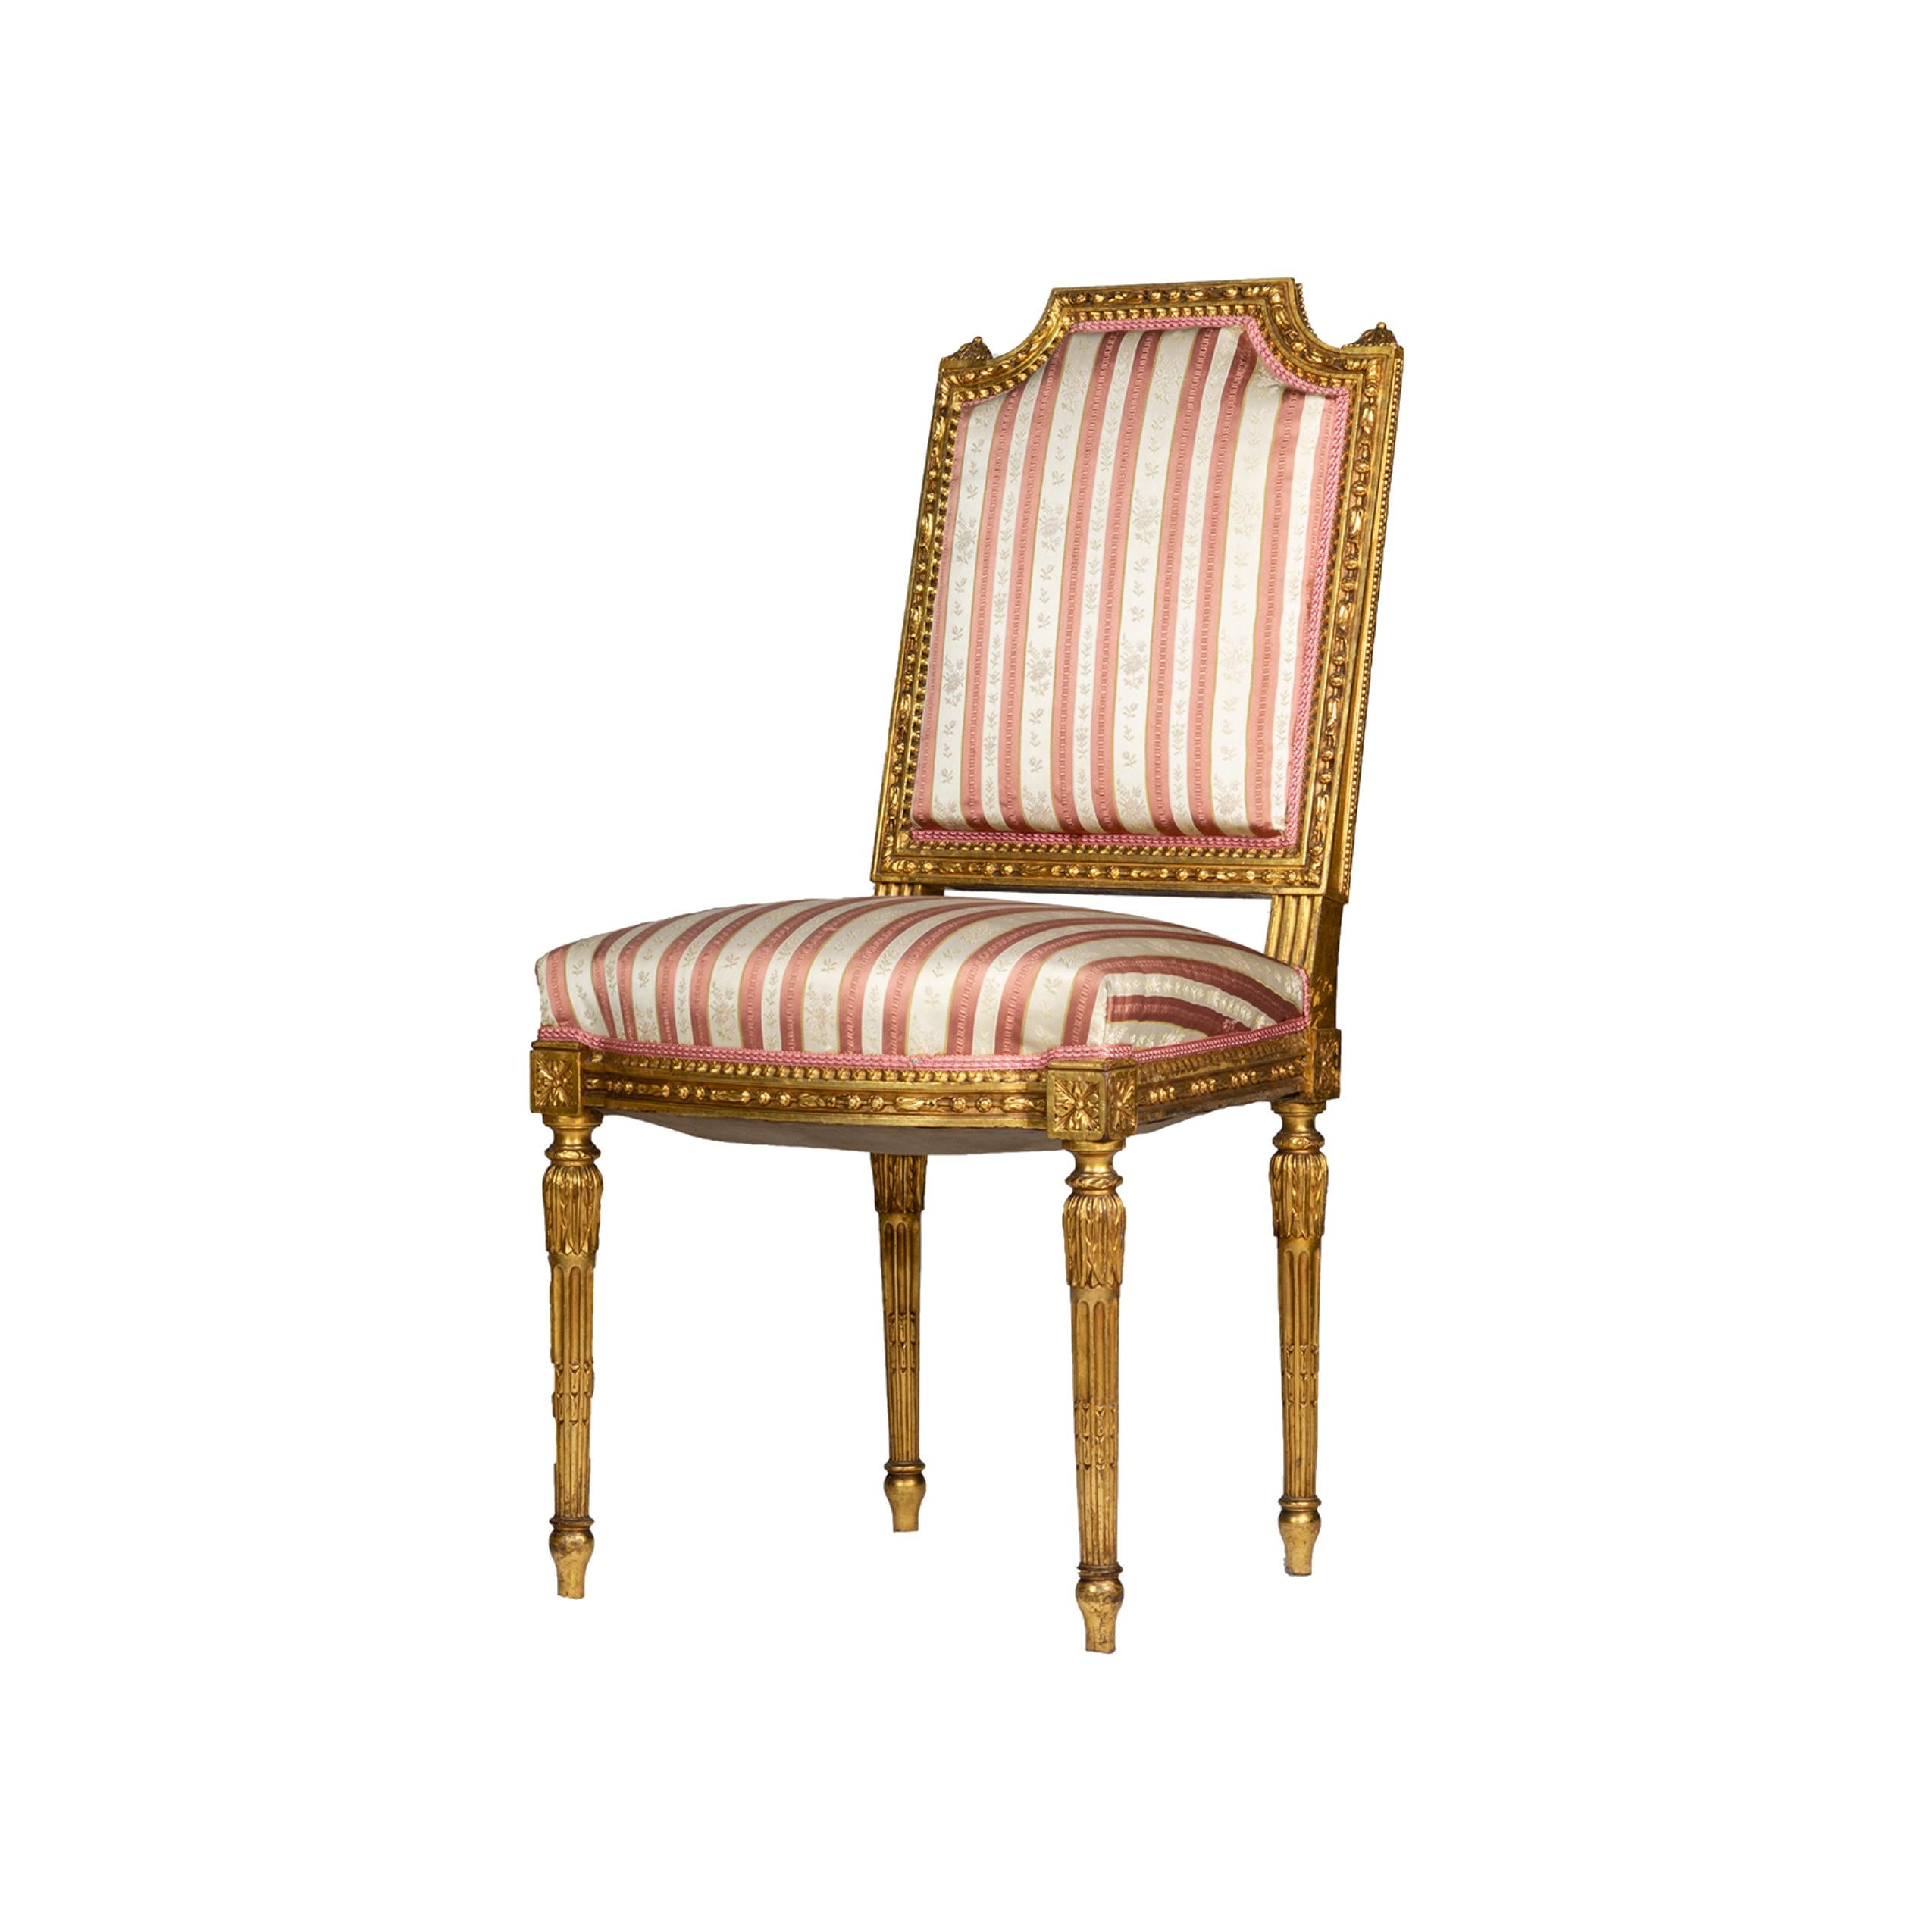 Ein Paar französischer Stühle im Louis-XVI-Stil mit vergoldeten Rahmen, gepolsterten Sitzen und Rückenlehnen, geschnitztem Blatt- und Blumenkamm und gedrechselten, sich verjüngenden Beinen, 20.

Höhe: 14,76 in (37,5 cm)
Sitzfläche: 7,48 x 7,48 Zoll